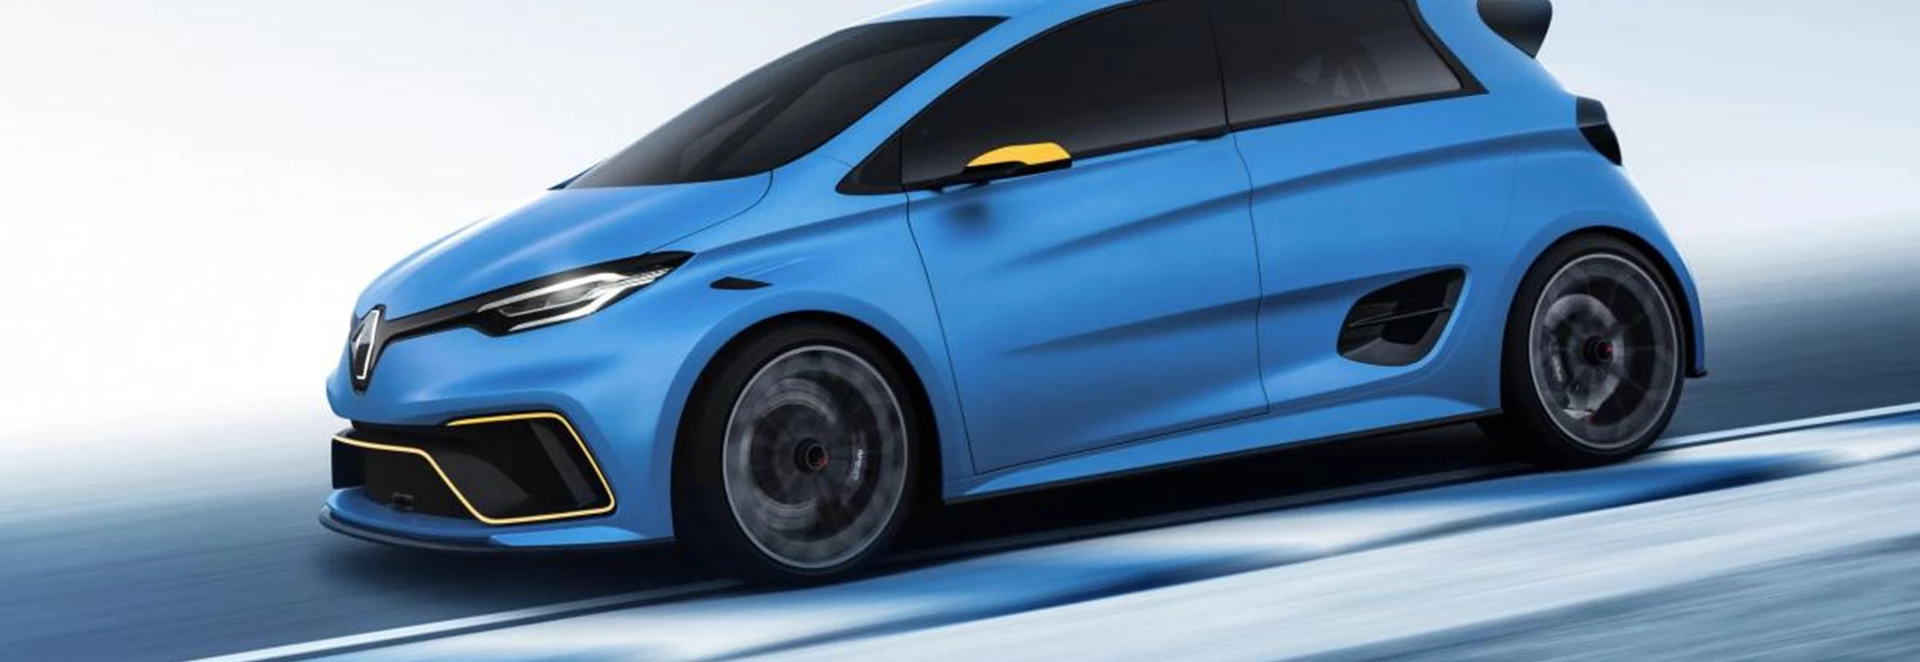 Coolest electric car ever? Renault unveils ZOE e-sport concept